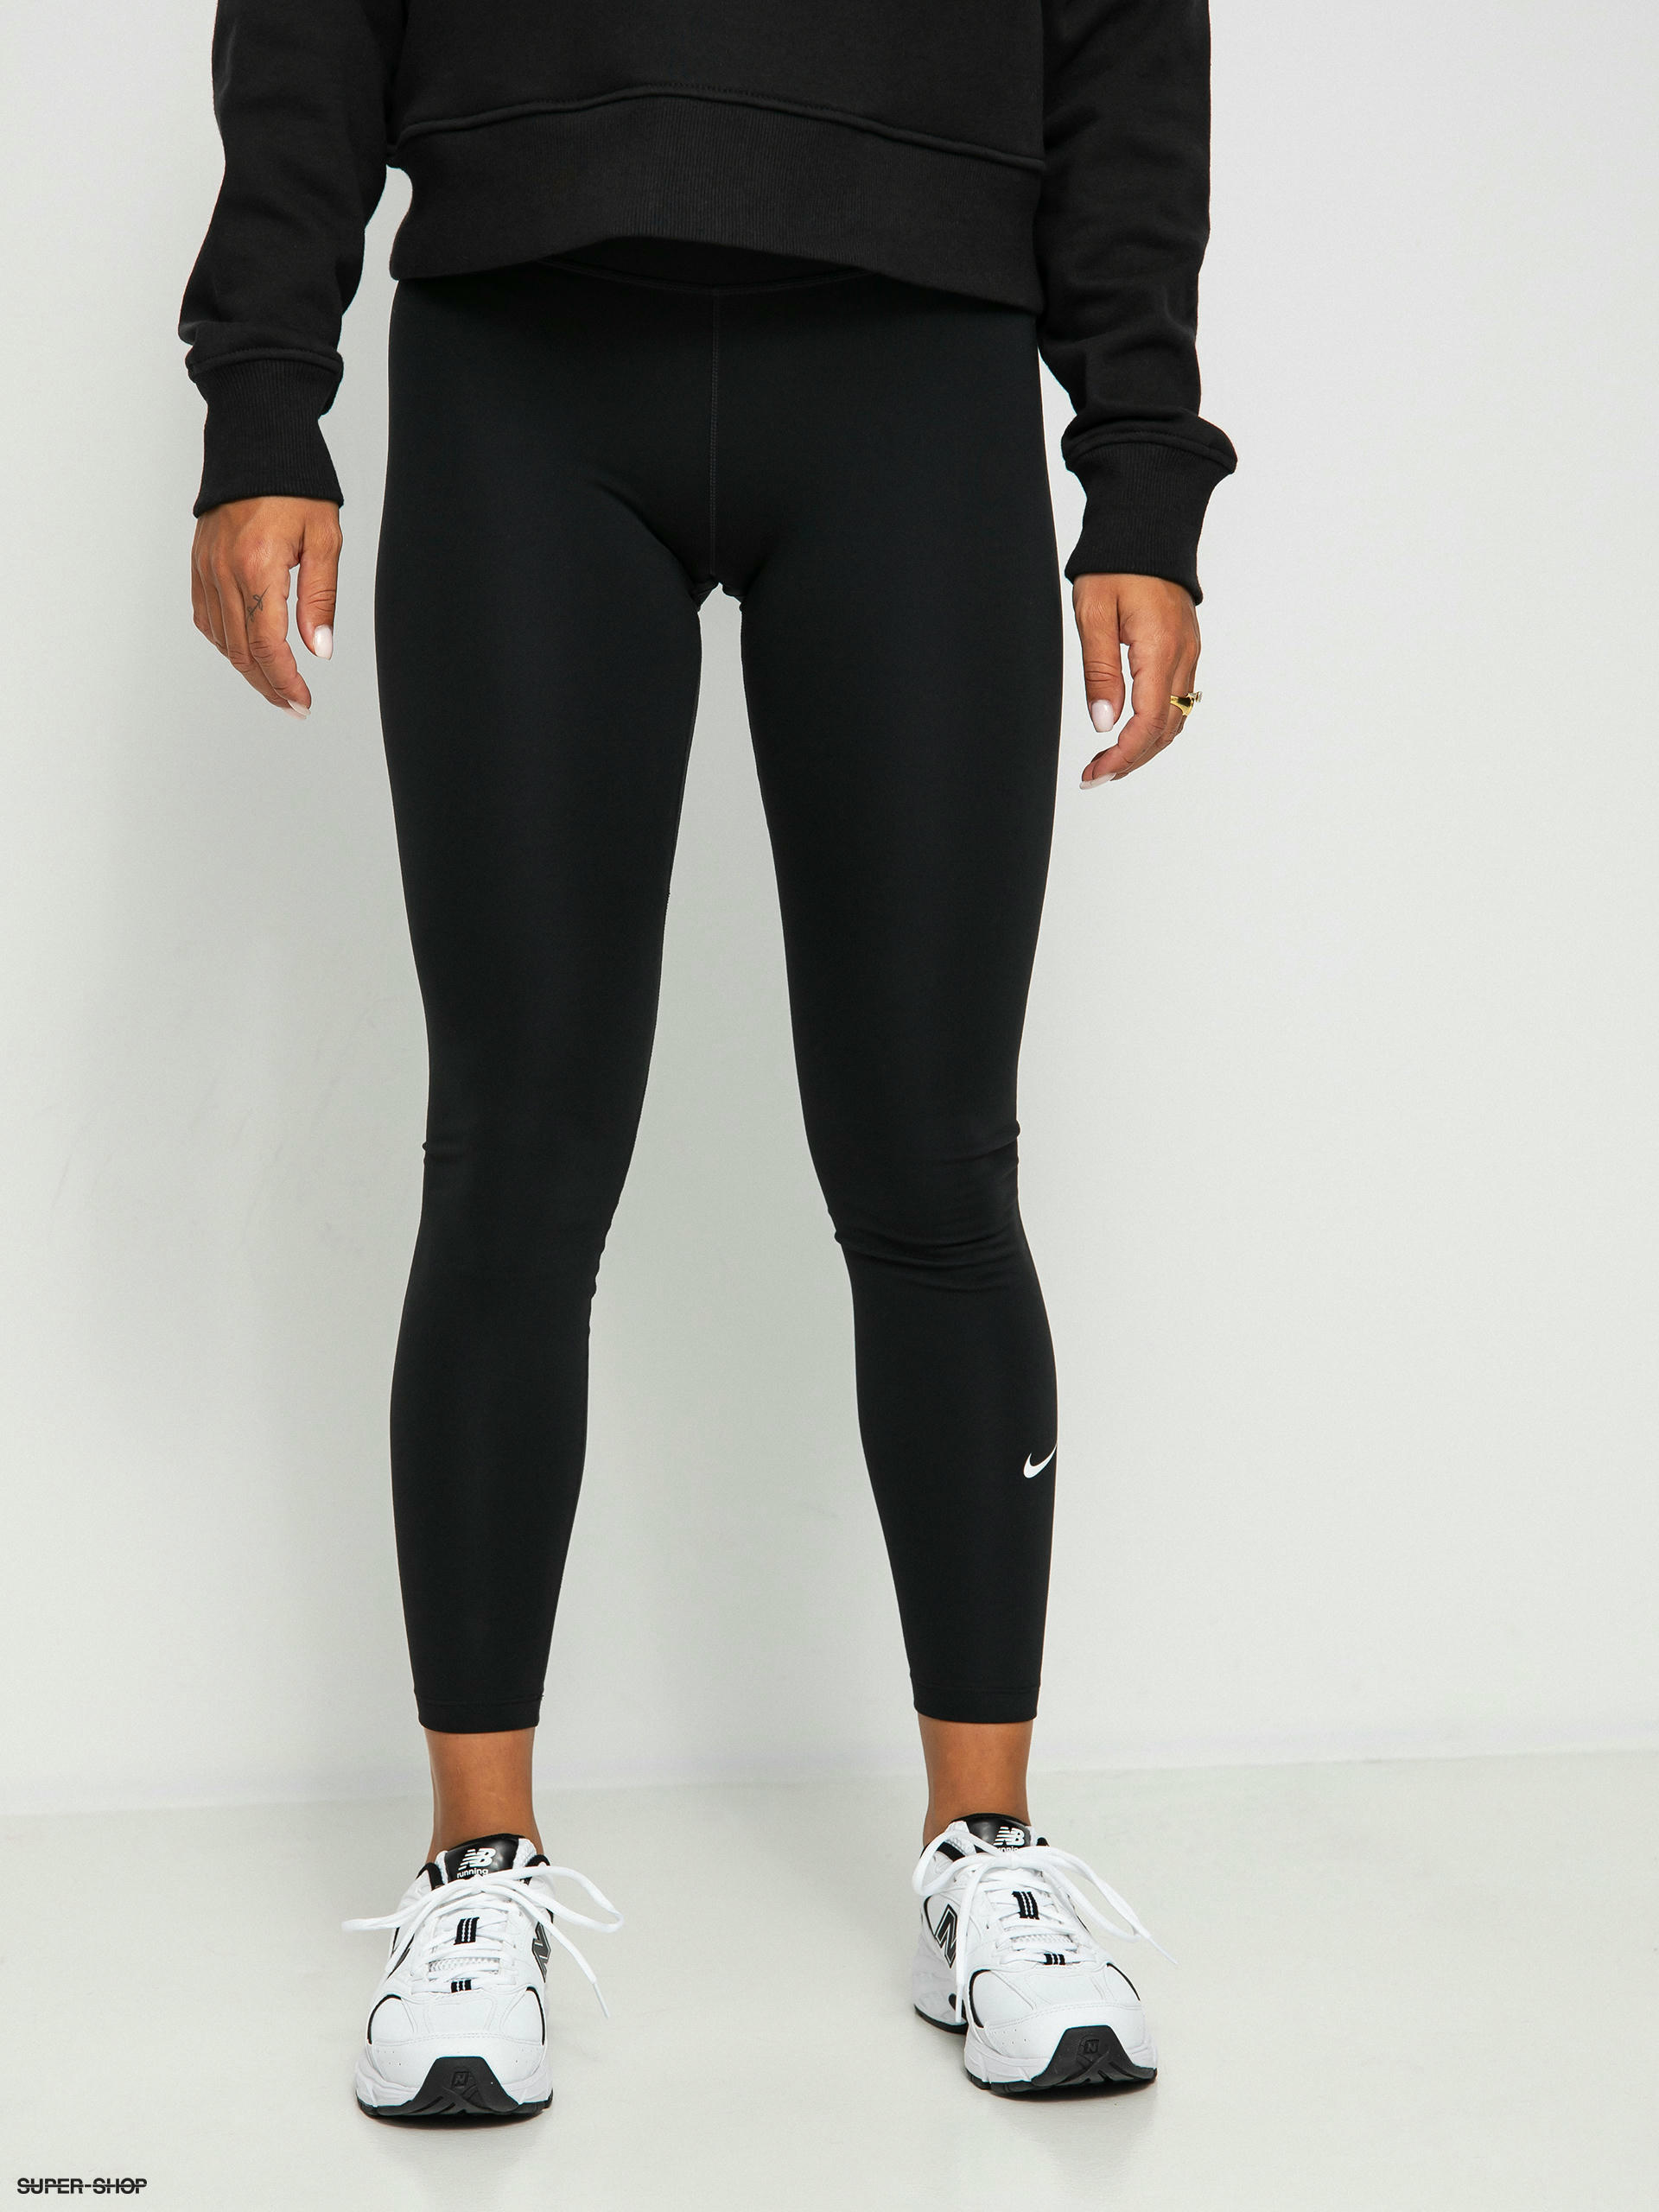 Nike Black One Leggings - Black/white